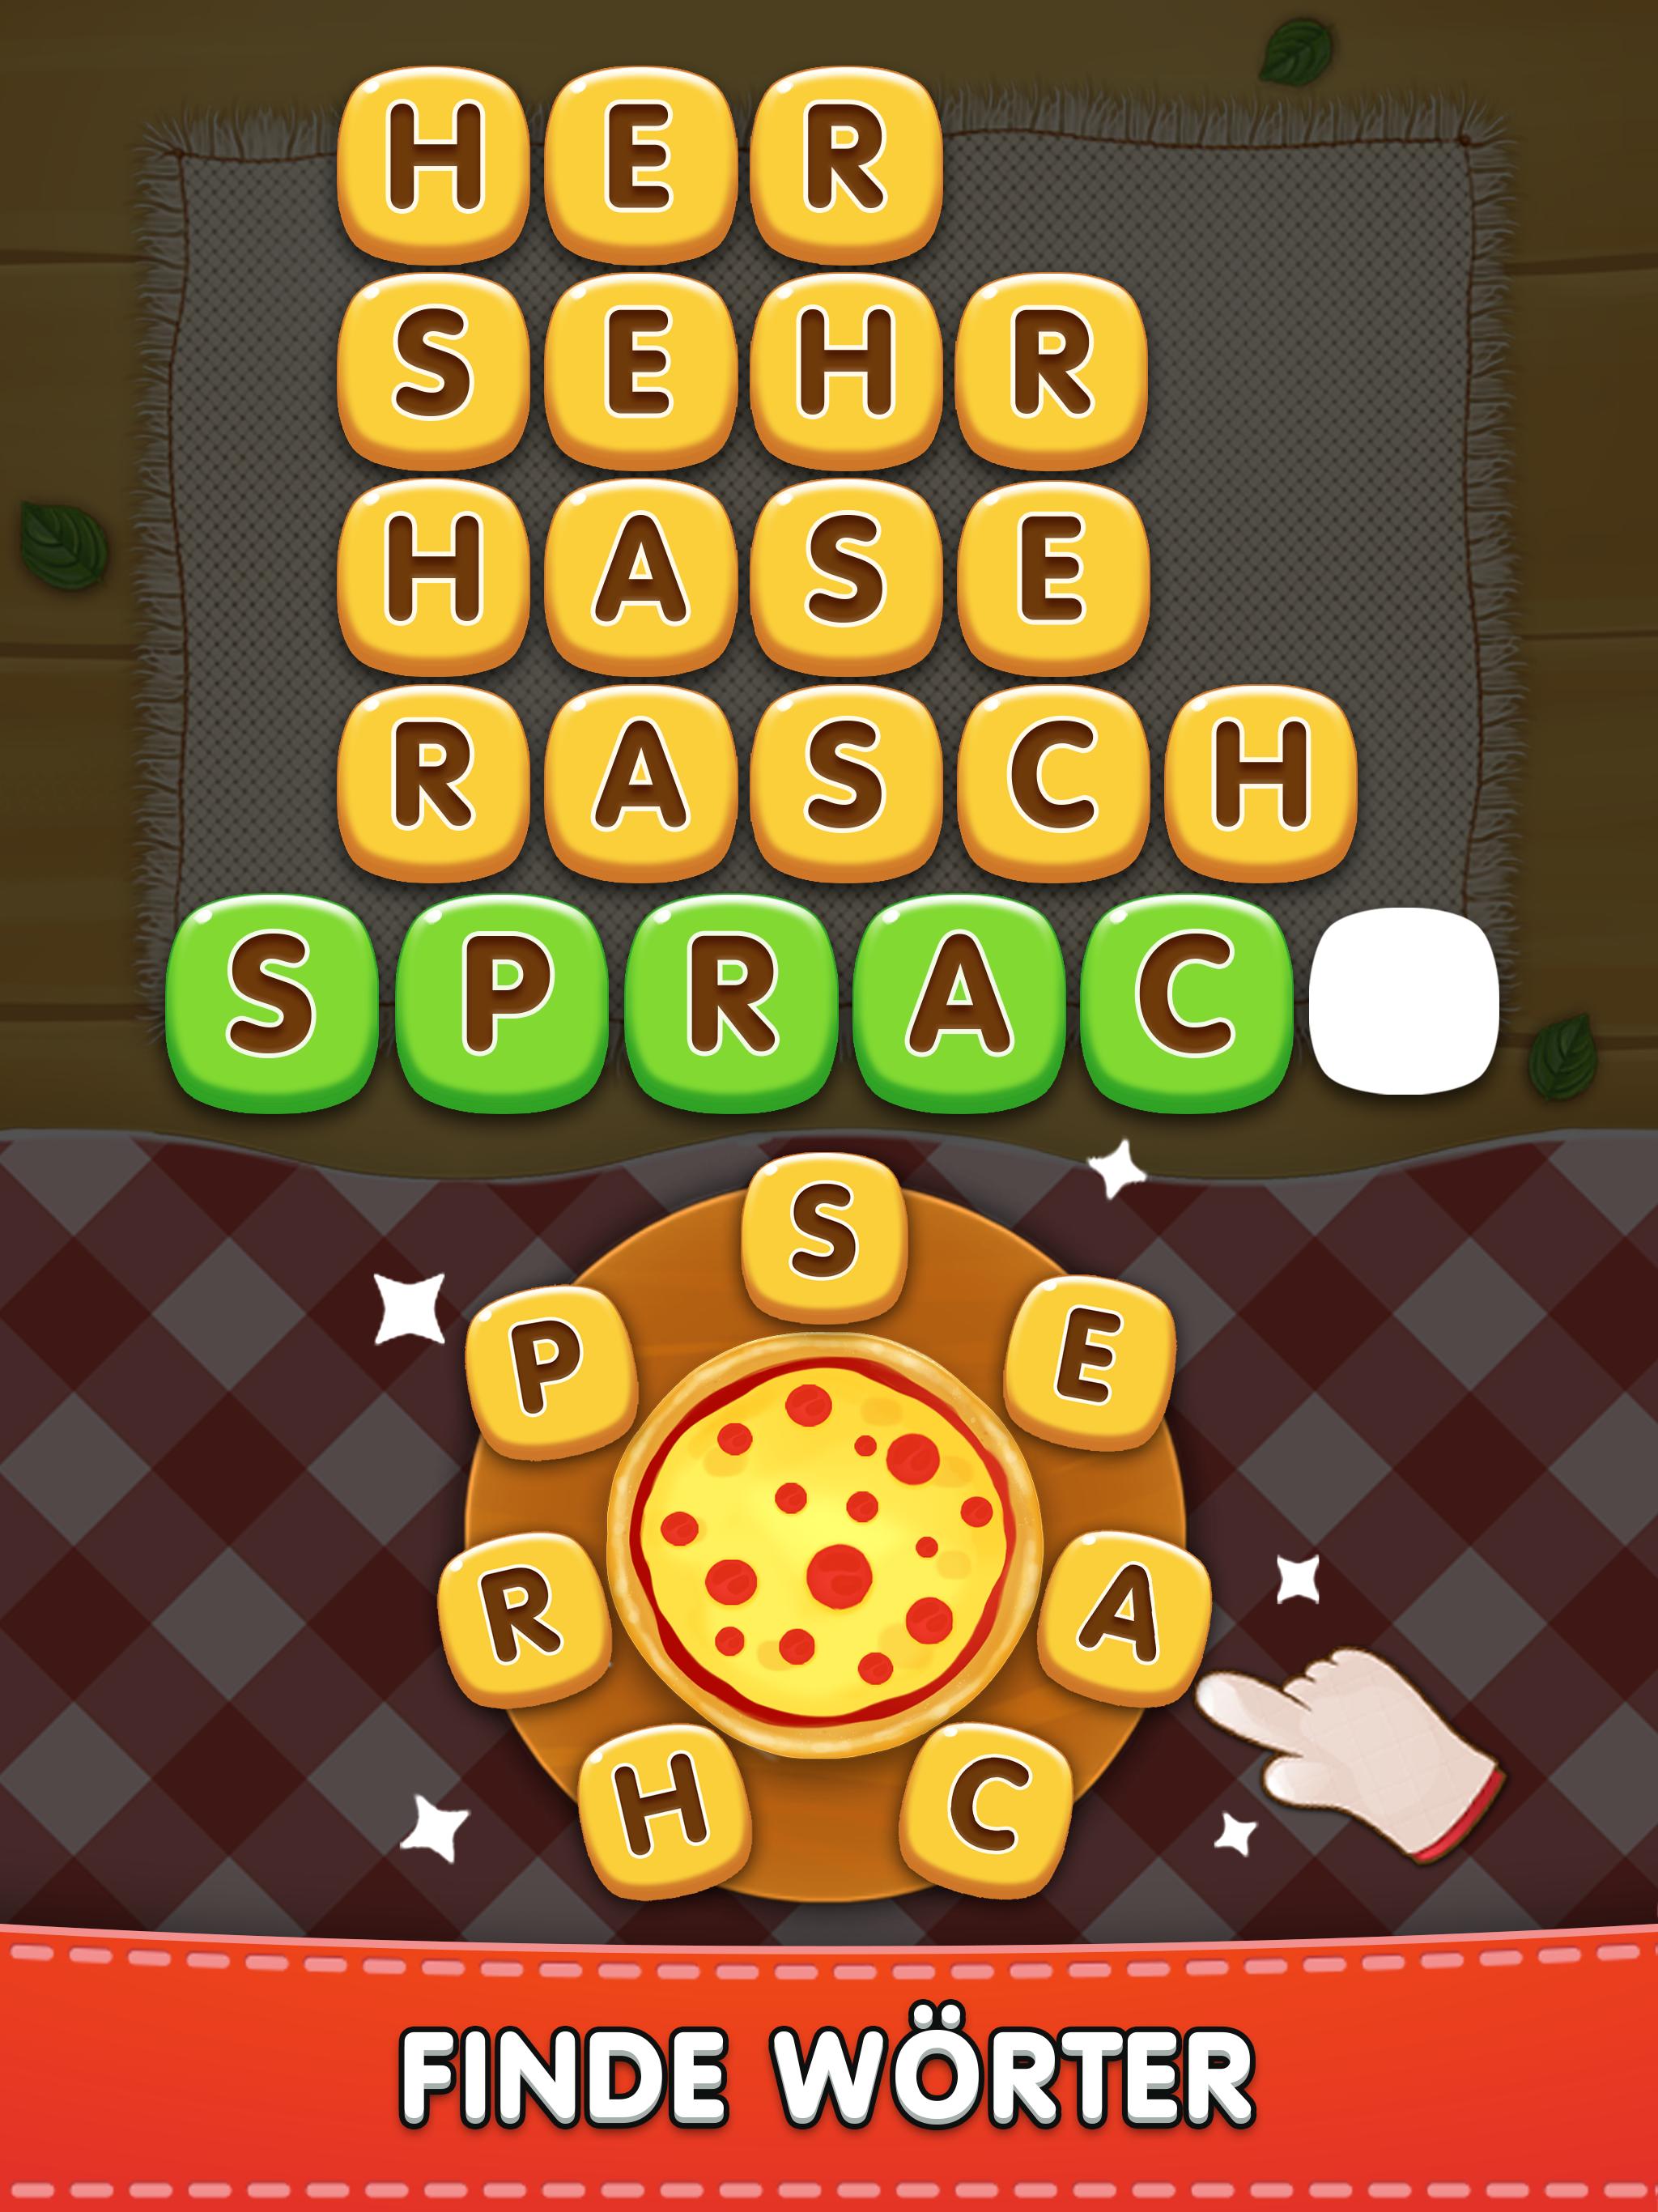 Worter Pizza Offline Wortspiel Deutsch Kostenlos Fur Android Apk Herunterladen